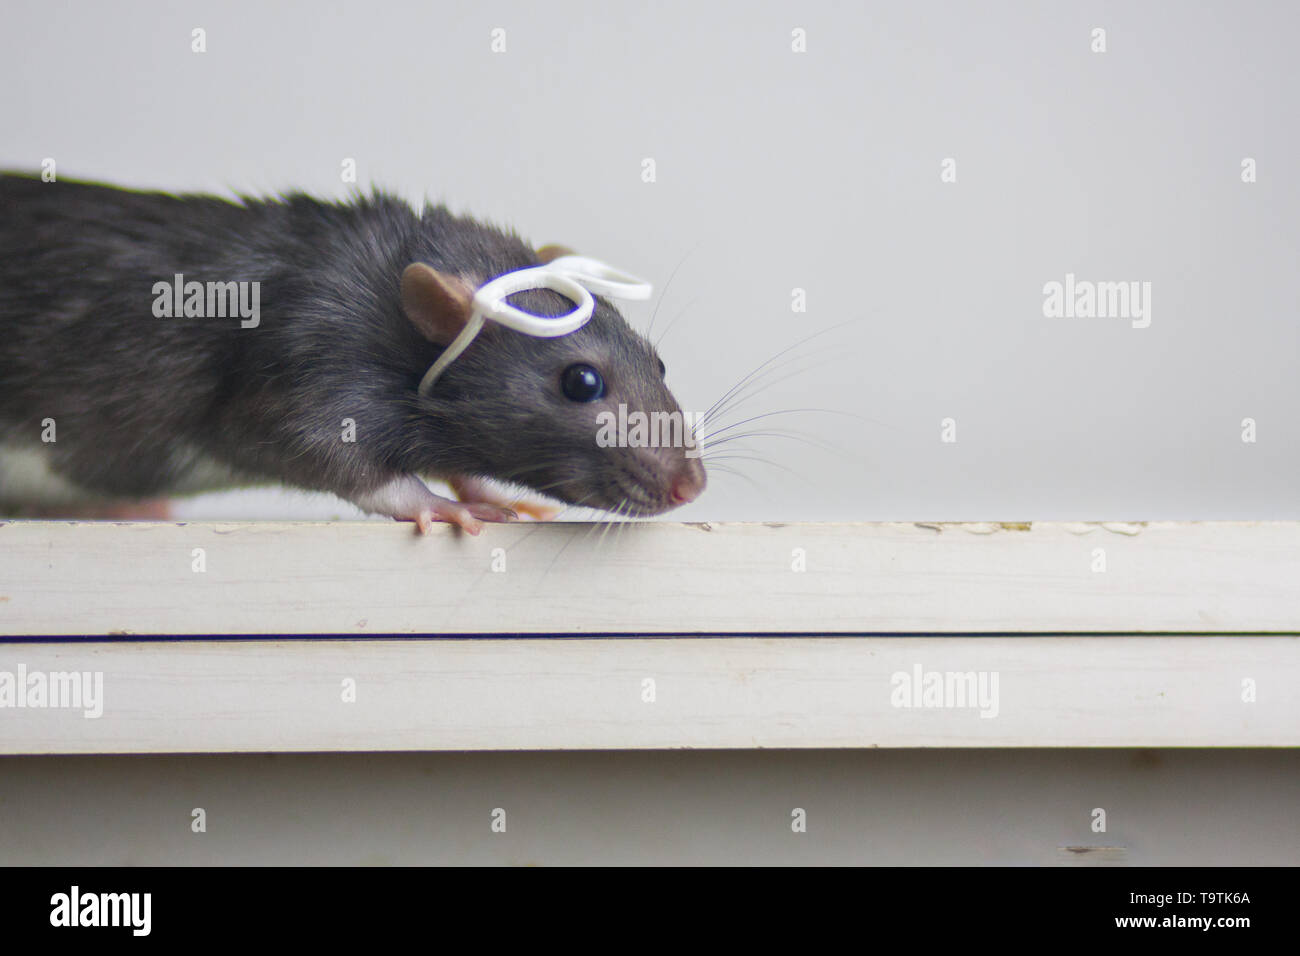 Зрение мыши. Перевёрнутая мышь. Зрение мышей. Серая мышка на столе.